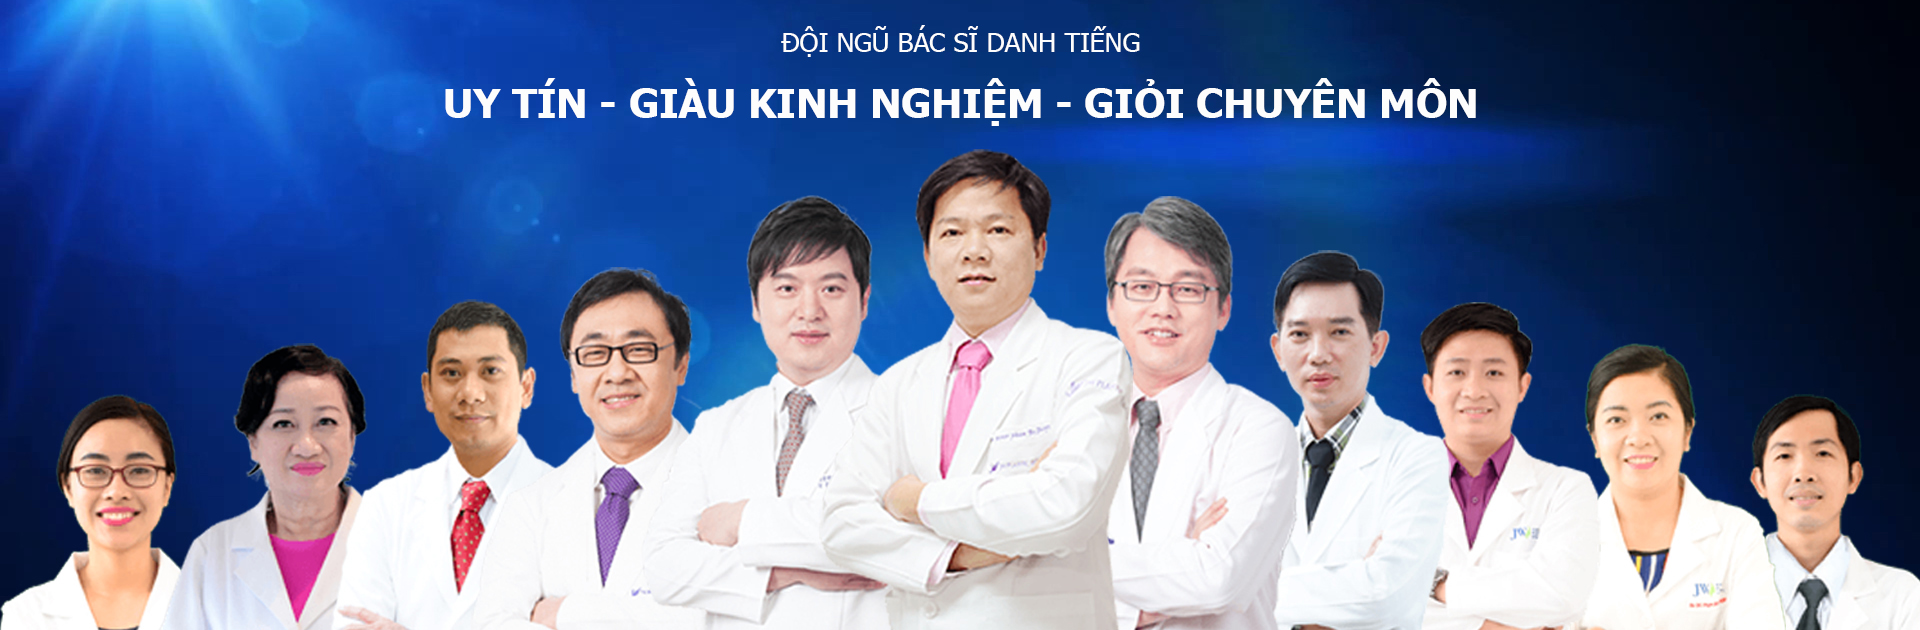 Đội ngũ những bác sĩ chuyên môn cao, giàu kinh nghiệm của Bệnh viện thẩm mỹ JW Hàn Quốc.